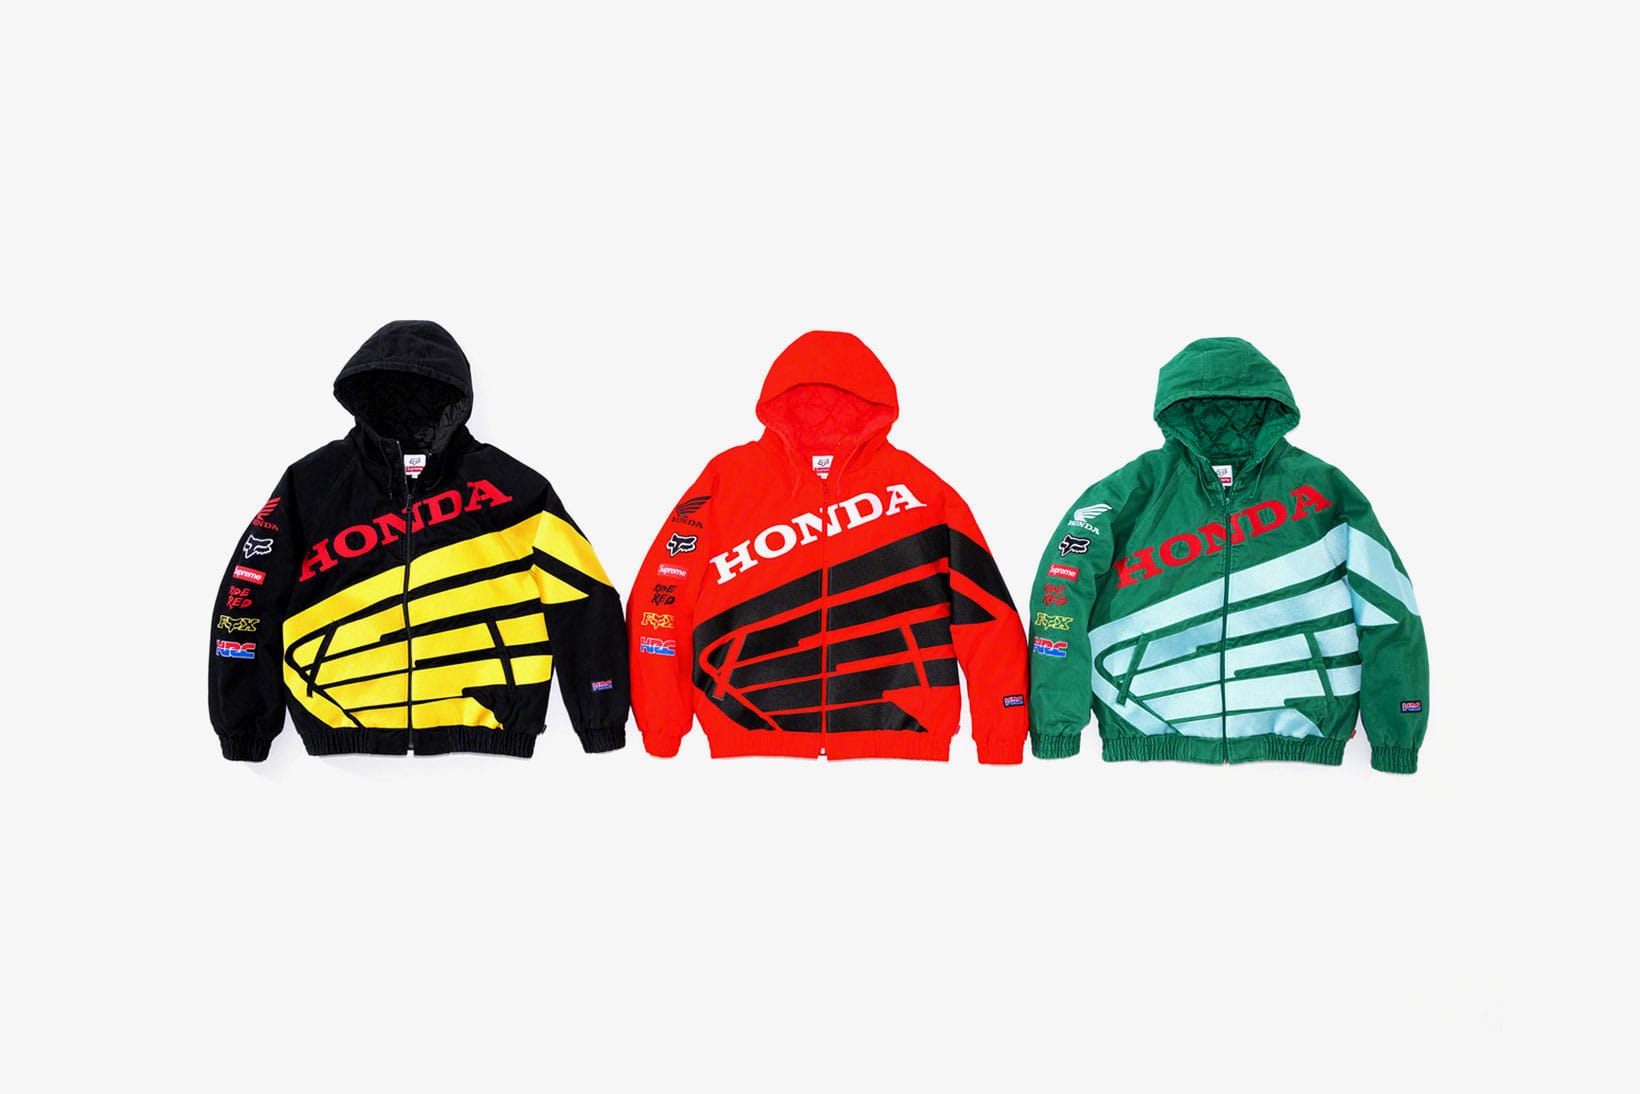 fox racing honda hoodie